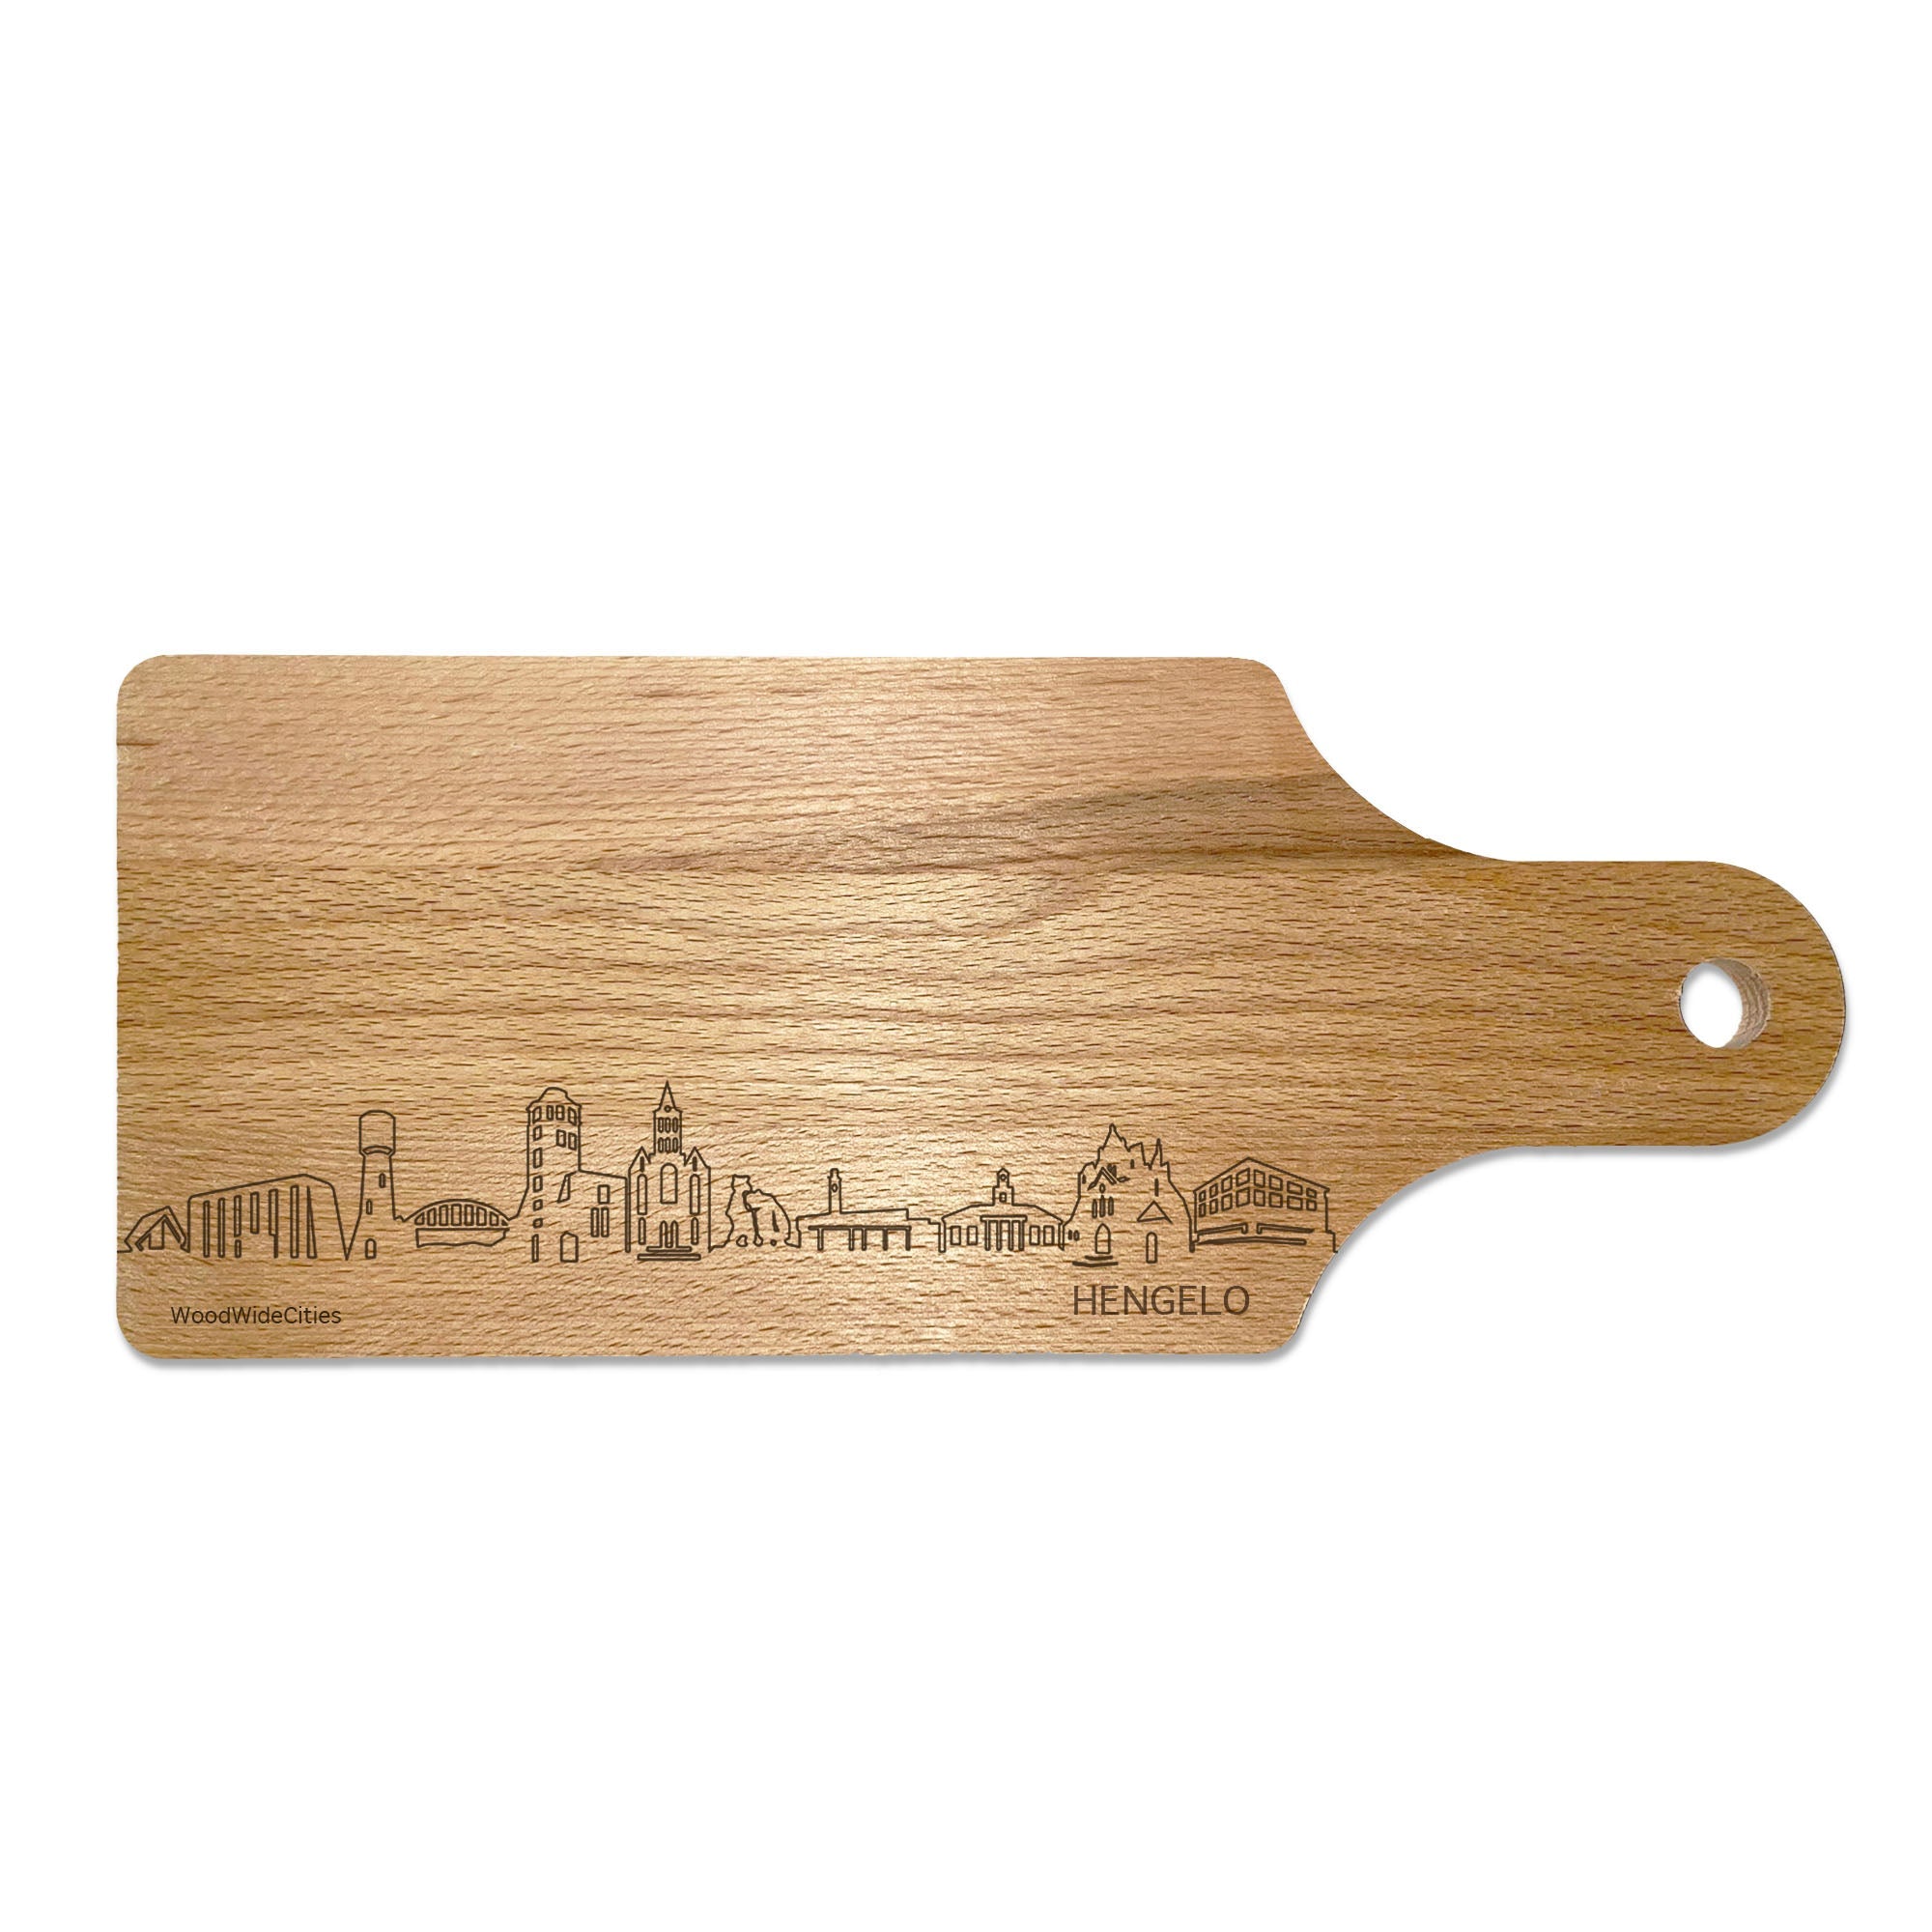 Skyline Borrelplank Hengelo houten cadeau decoratie relatiegeschenk van WoodWideCities